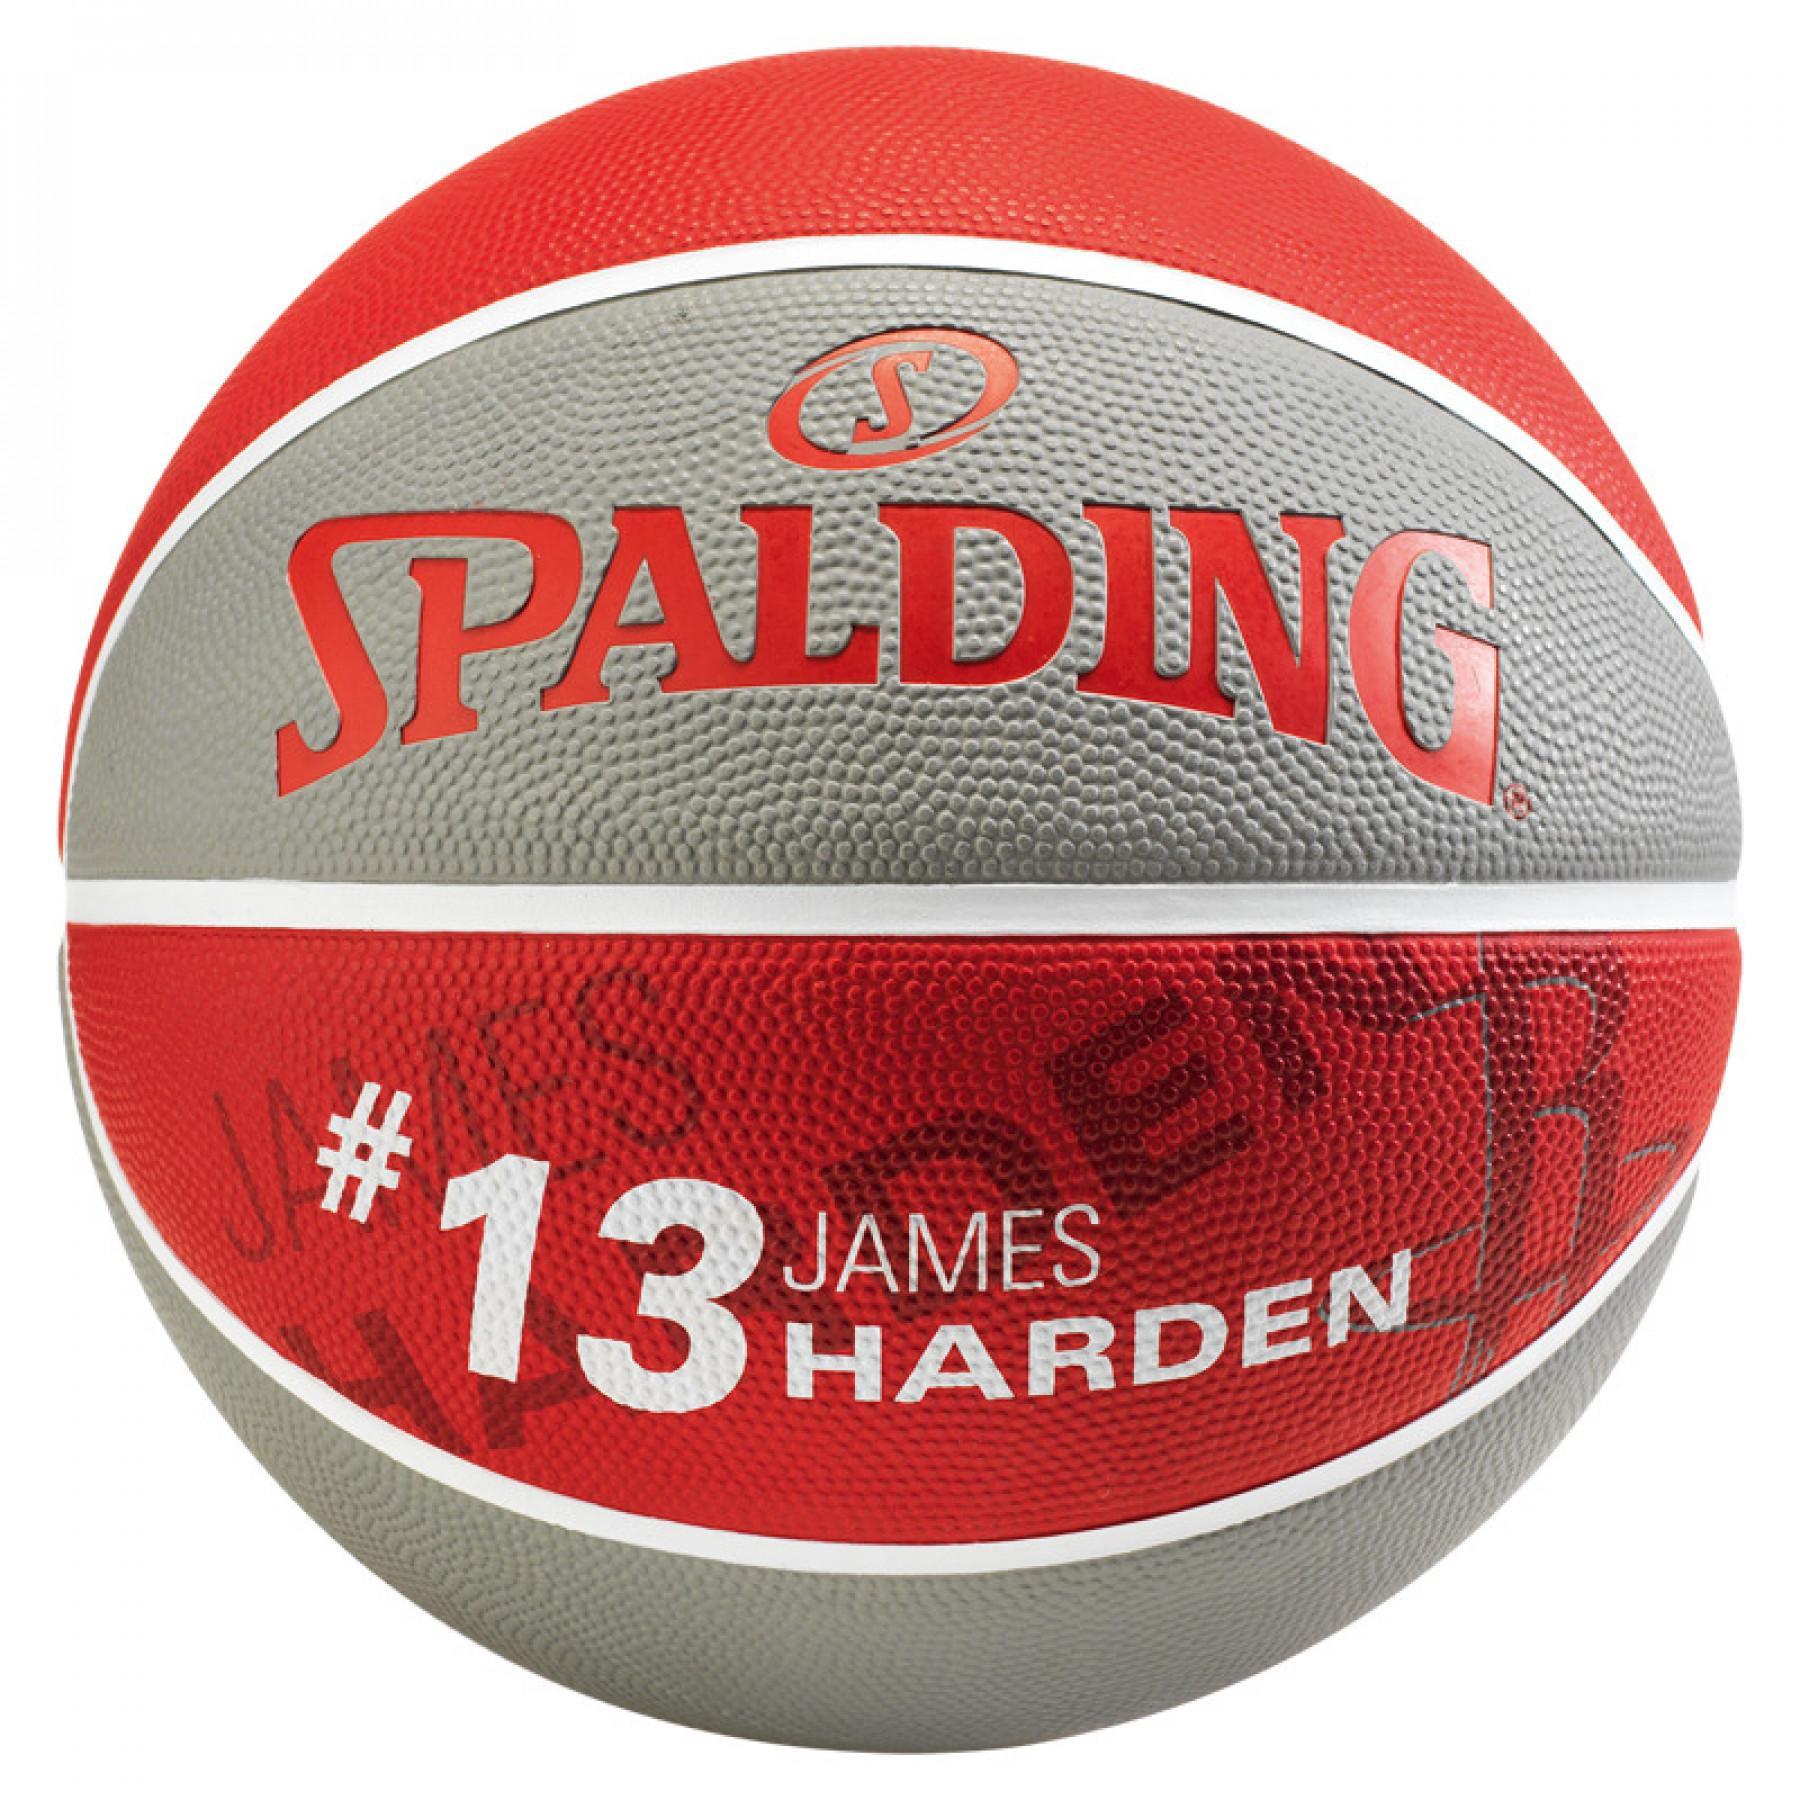 Ballon Spalding NBA Player James Harden (83-845z)